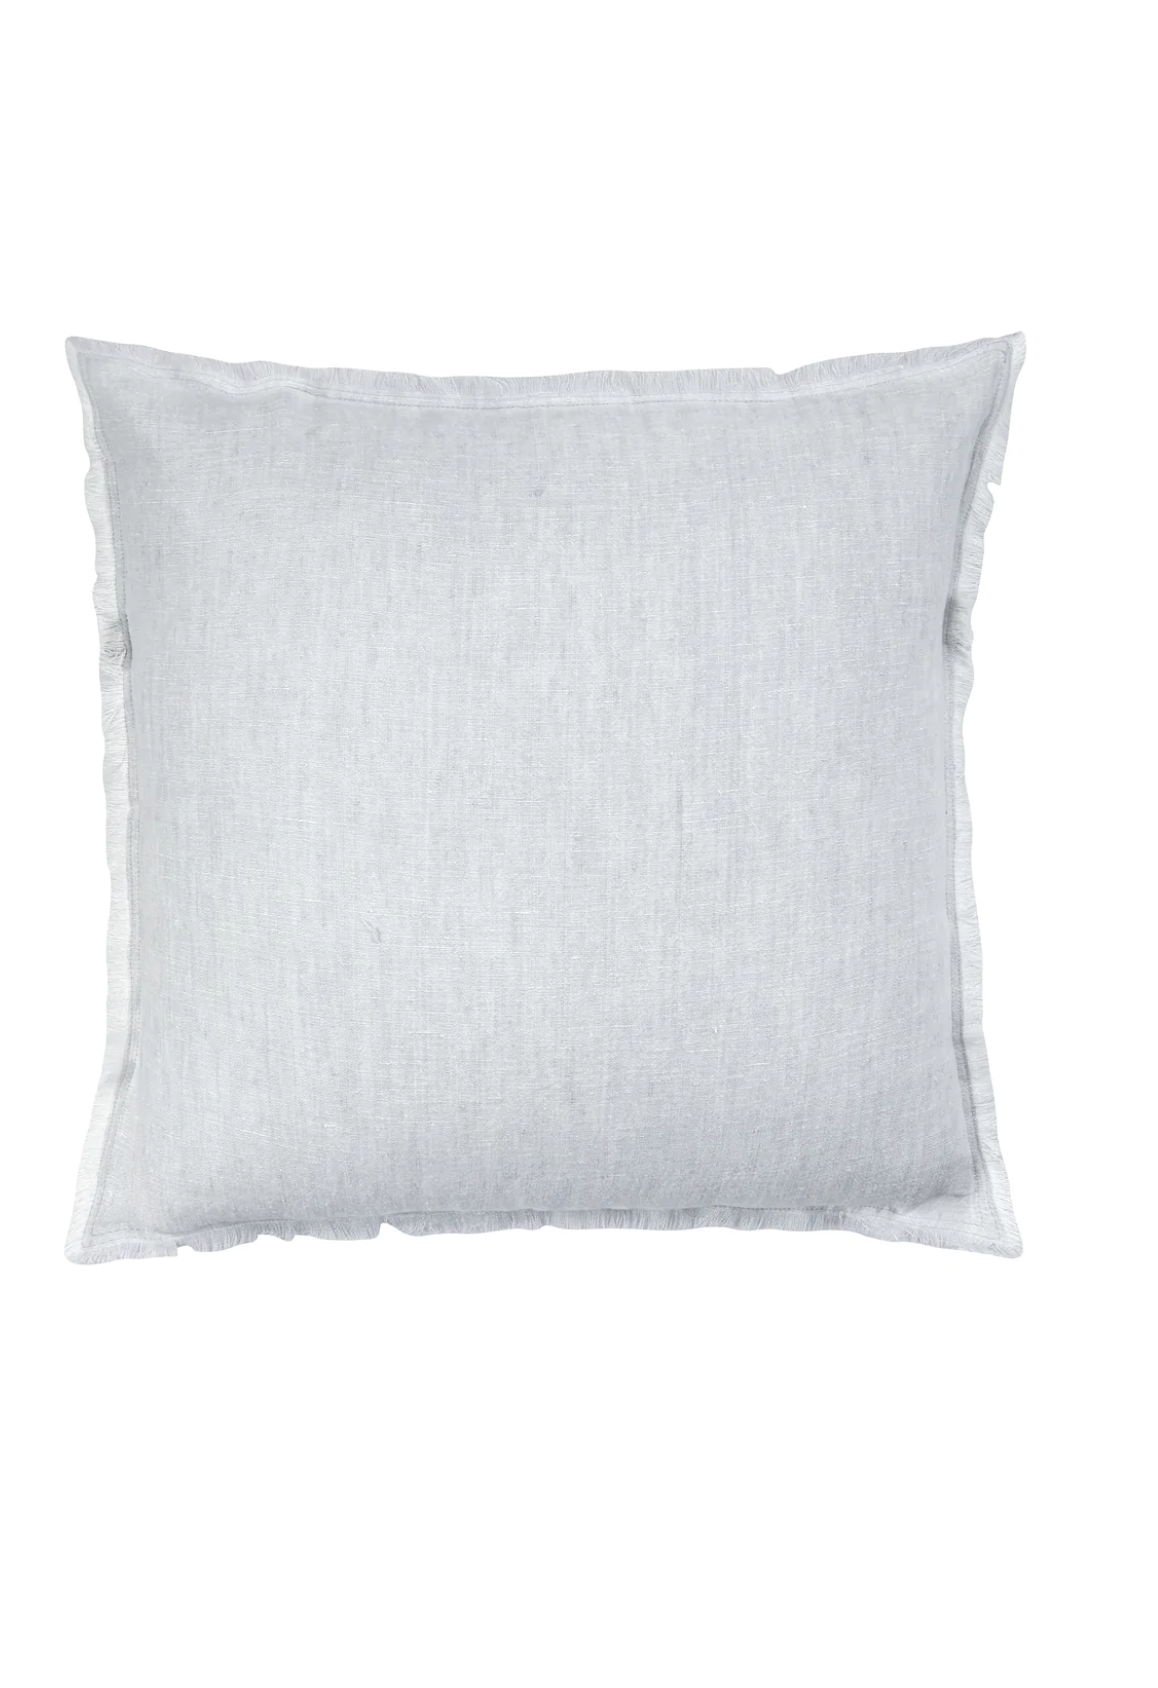 Light Grey Crossdye Linen Pillows